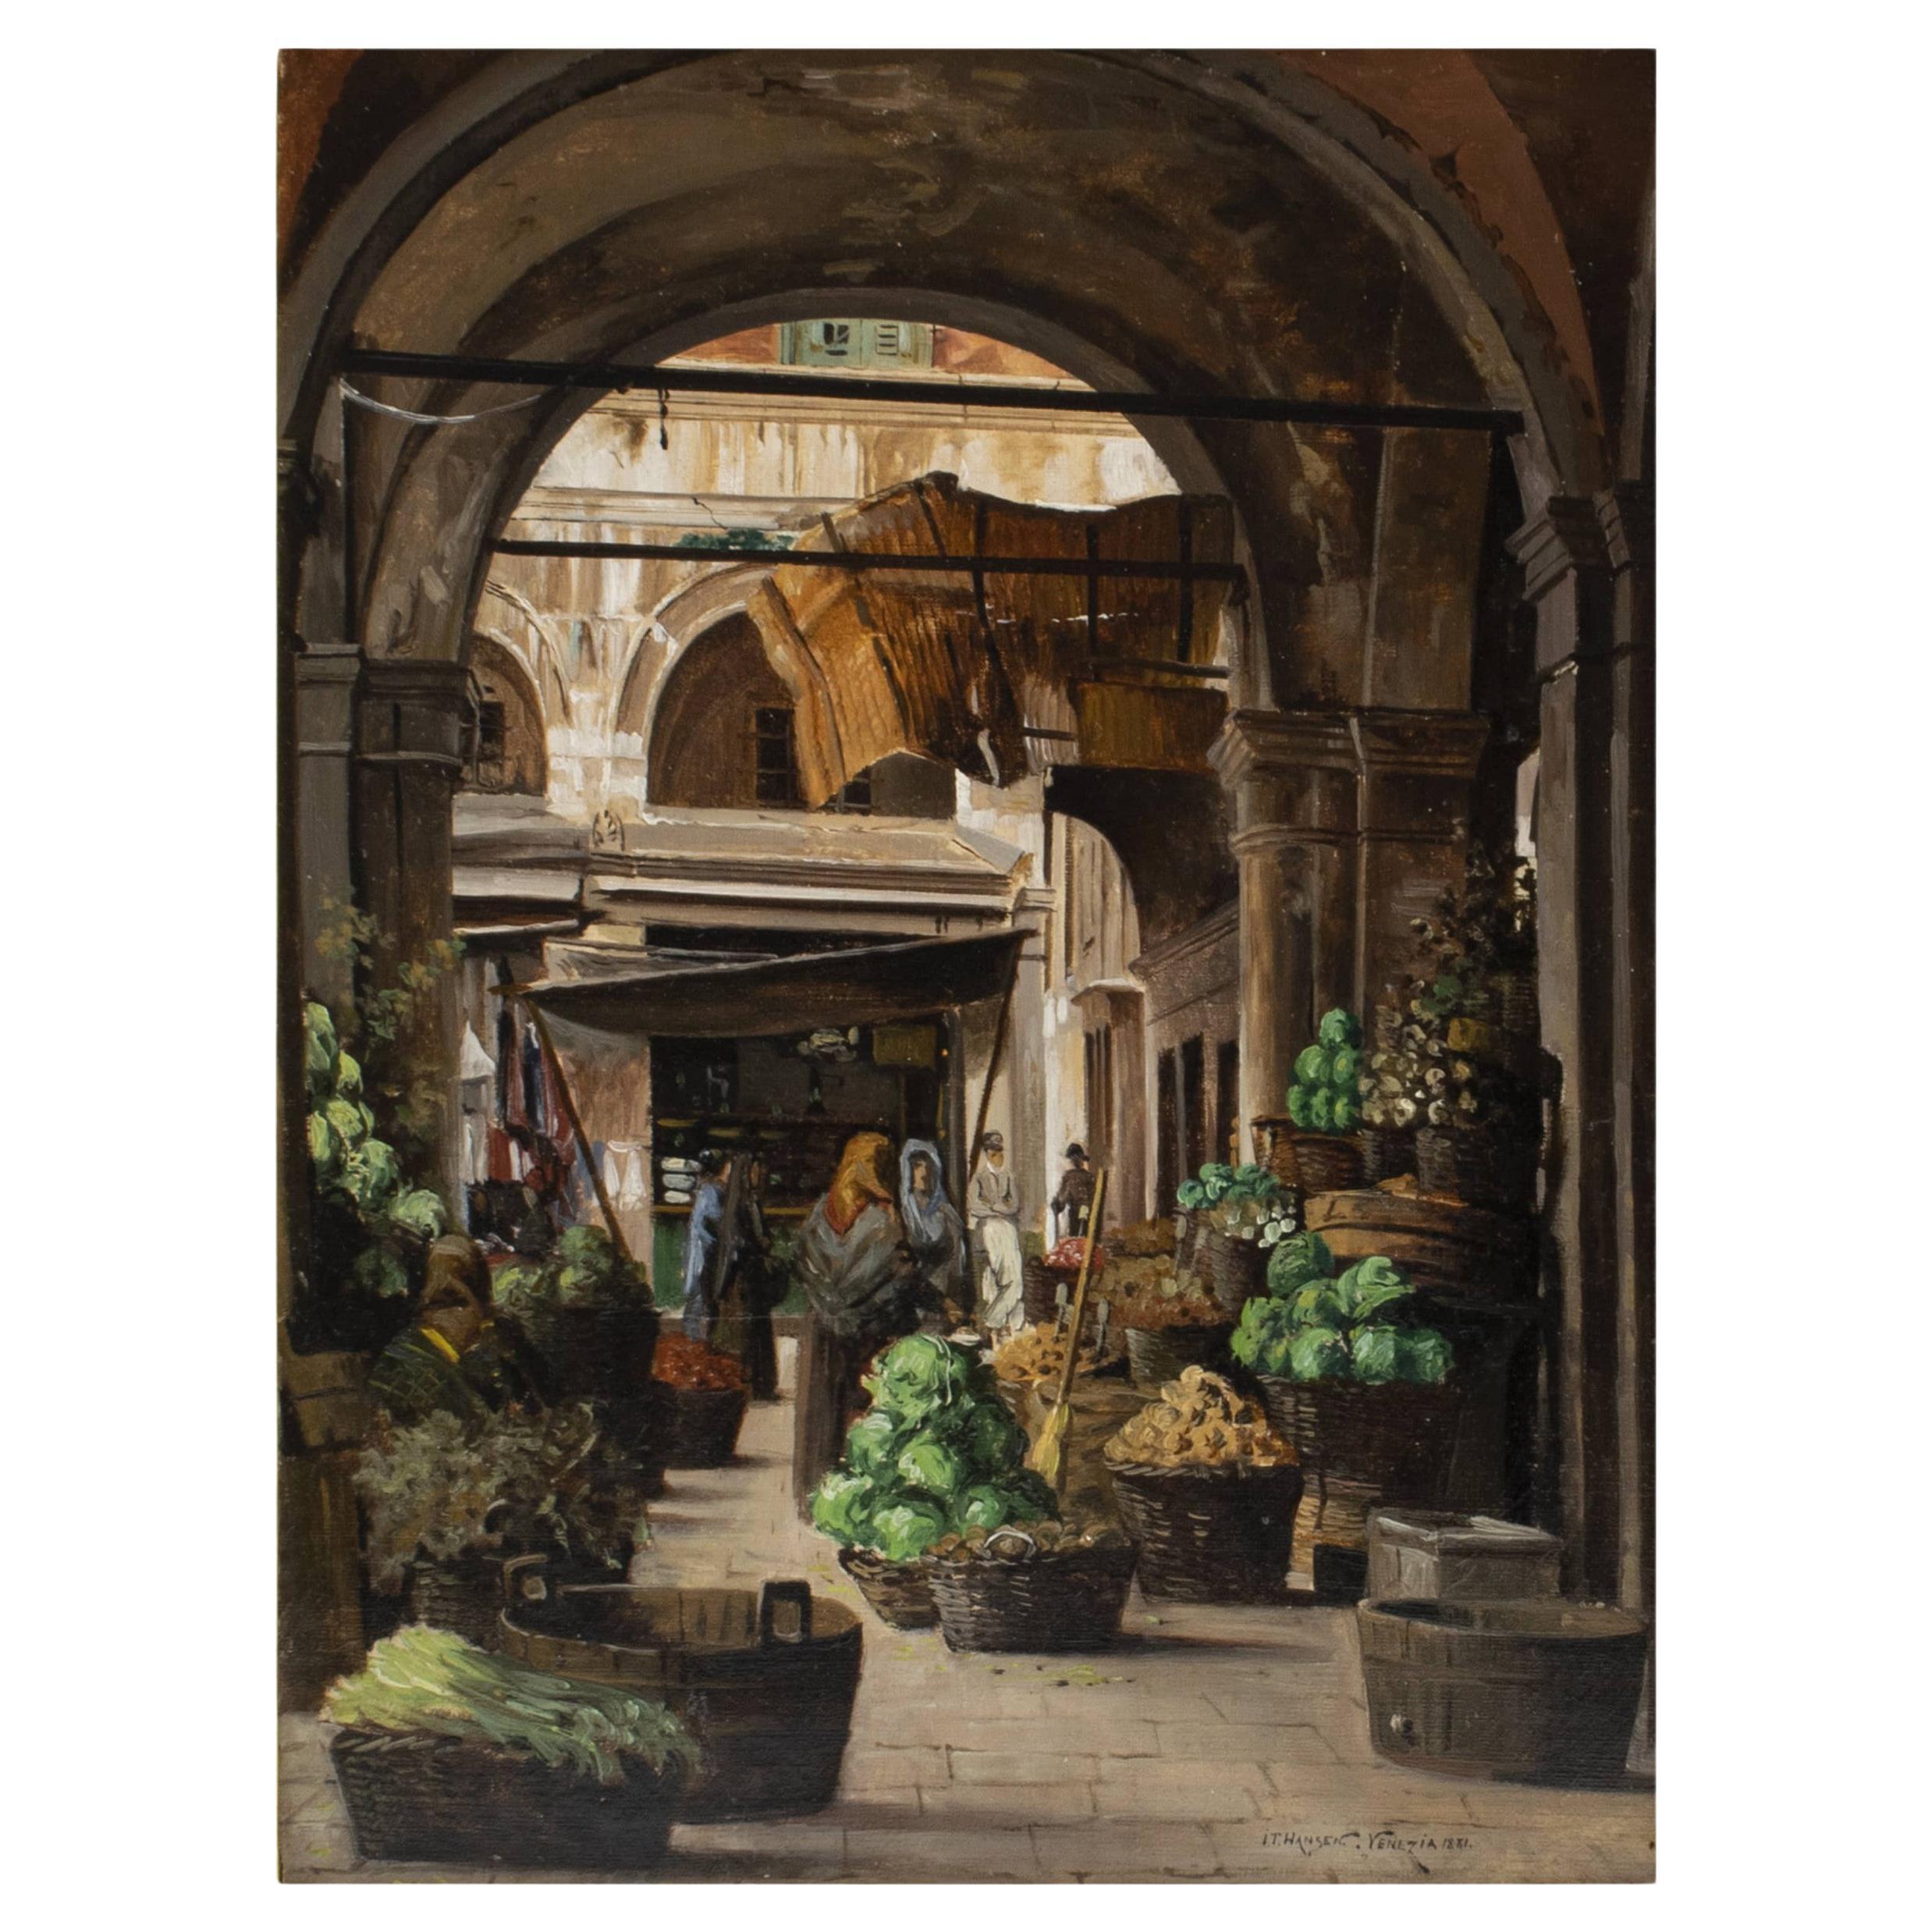 I.T. Hansen, Market Scene From "Piazza Delle Arba", VENICE For Sale